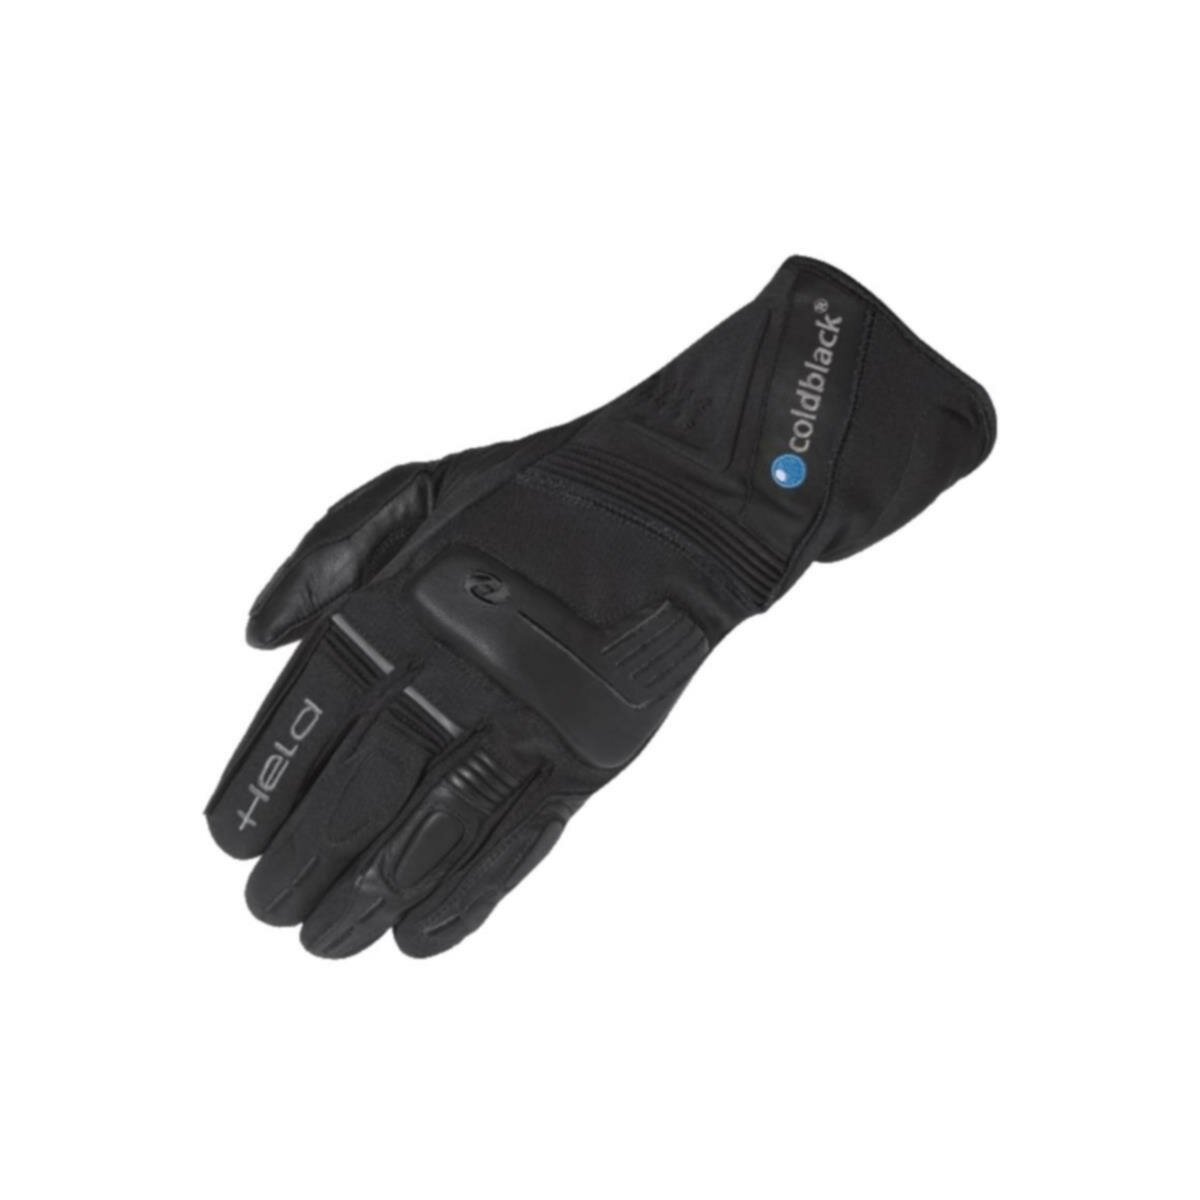 Held Rainstorm Handschuh schwarz | motorun.de, 59,90 € | Motorradhandschuhe